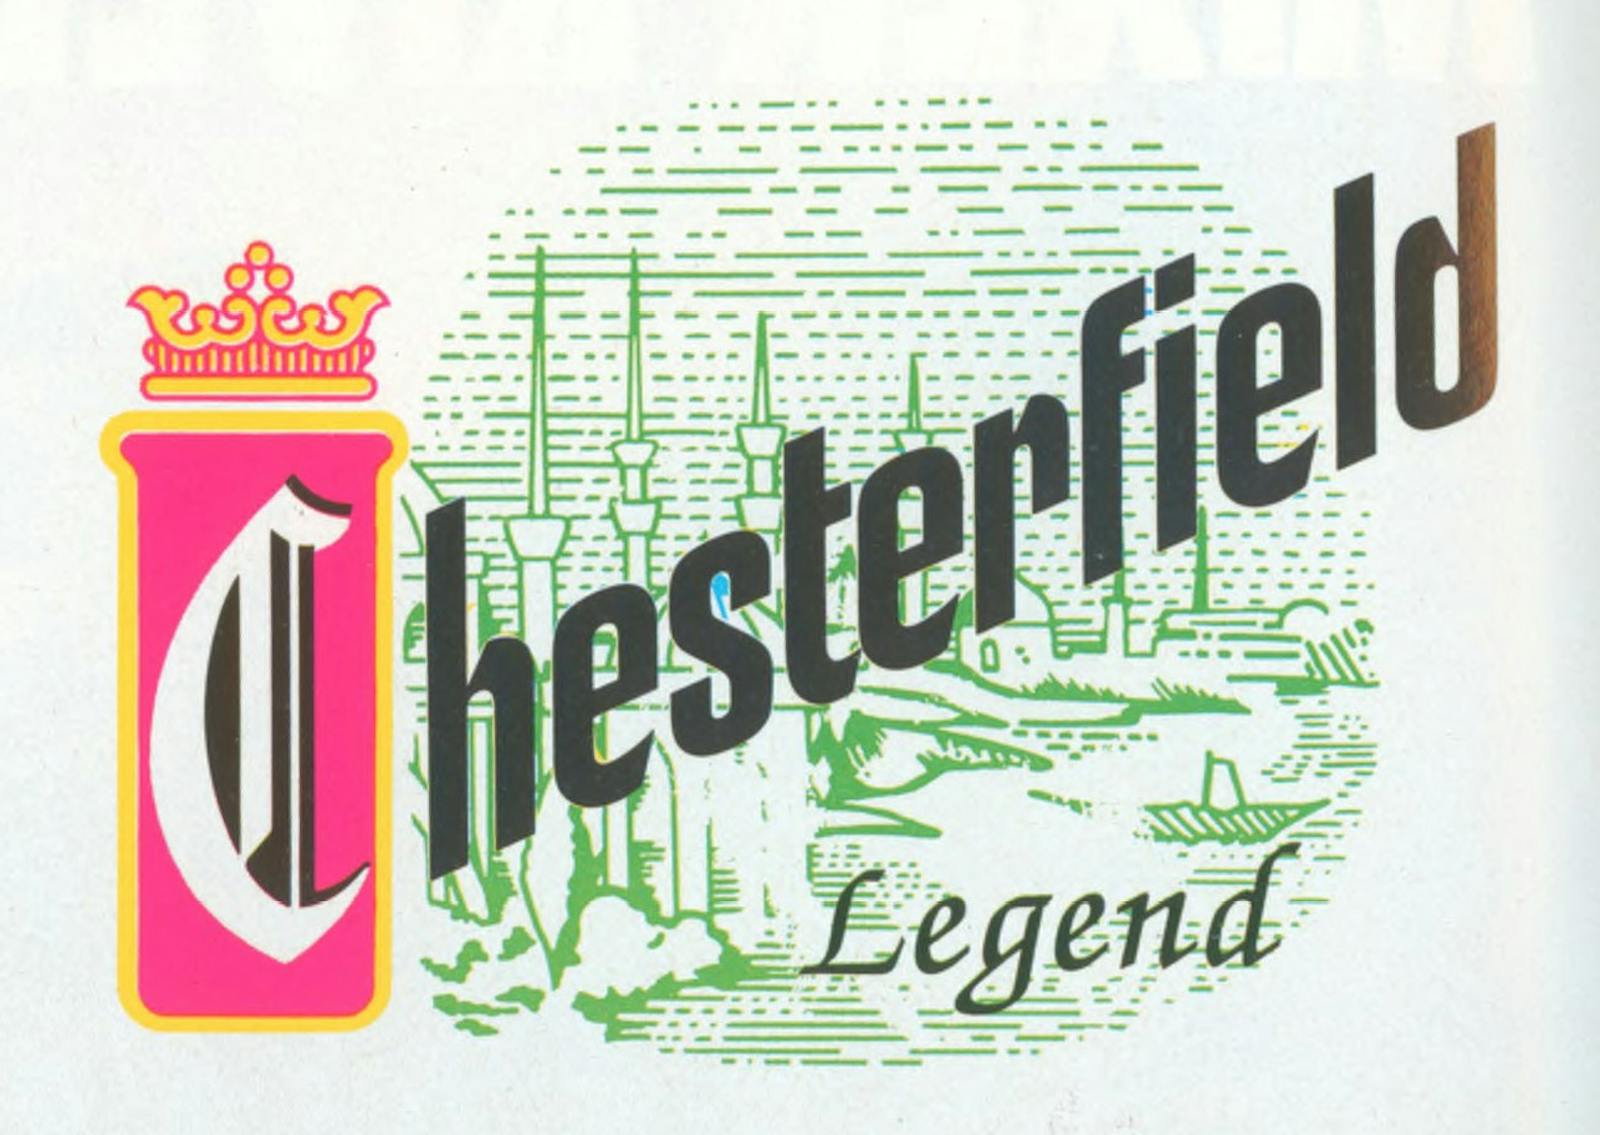 Pubblicità Chesterfield: Chesterfield legend